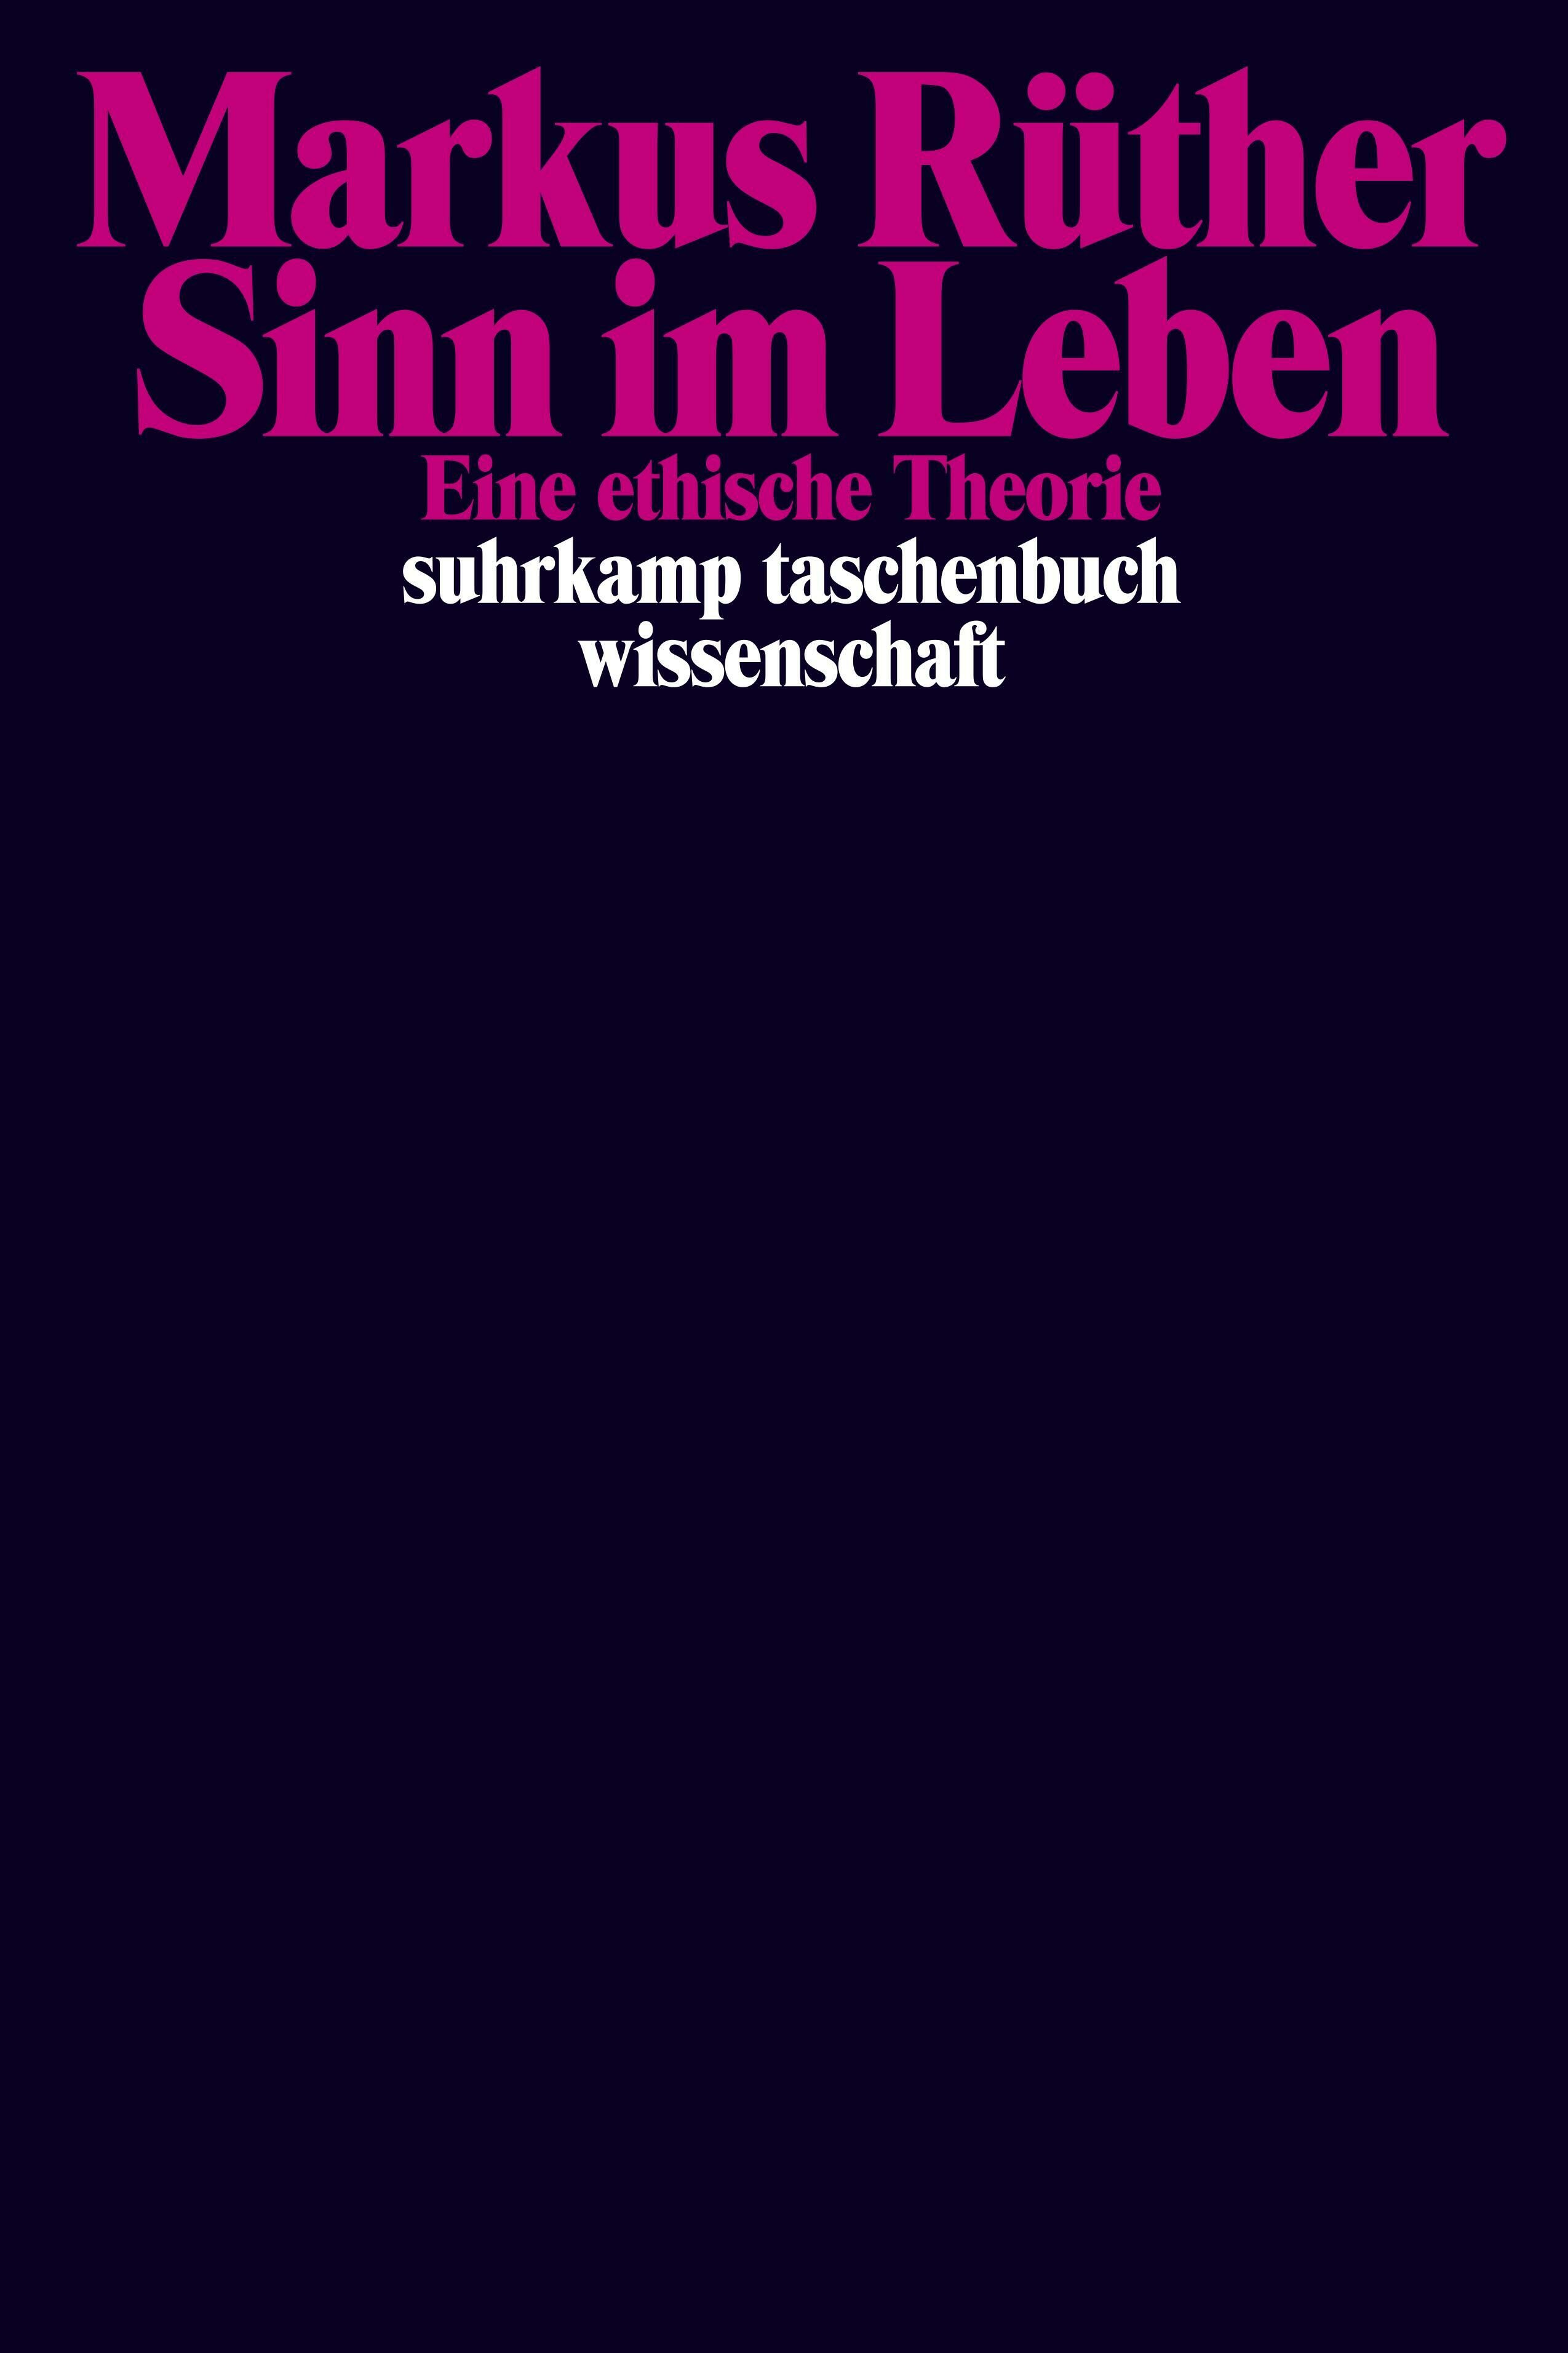 Sinn im Leben, Markus Rüther, Literatur, Philosophie, Ethik, Gesellschaft, suhrkamp taschenbuch Verlag